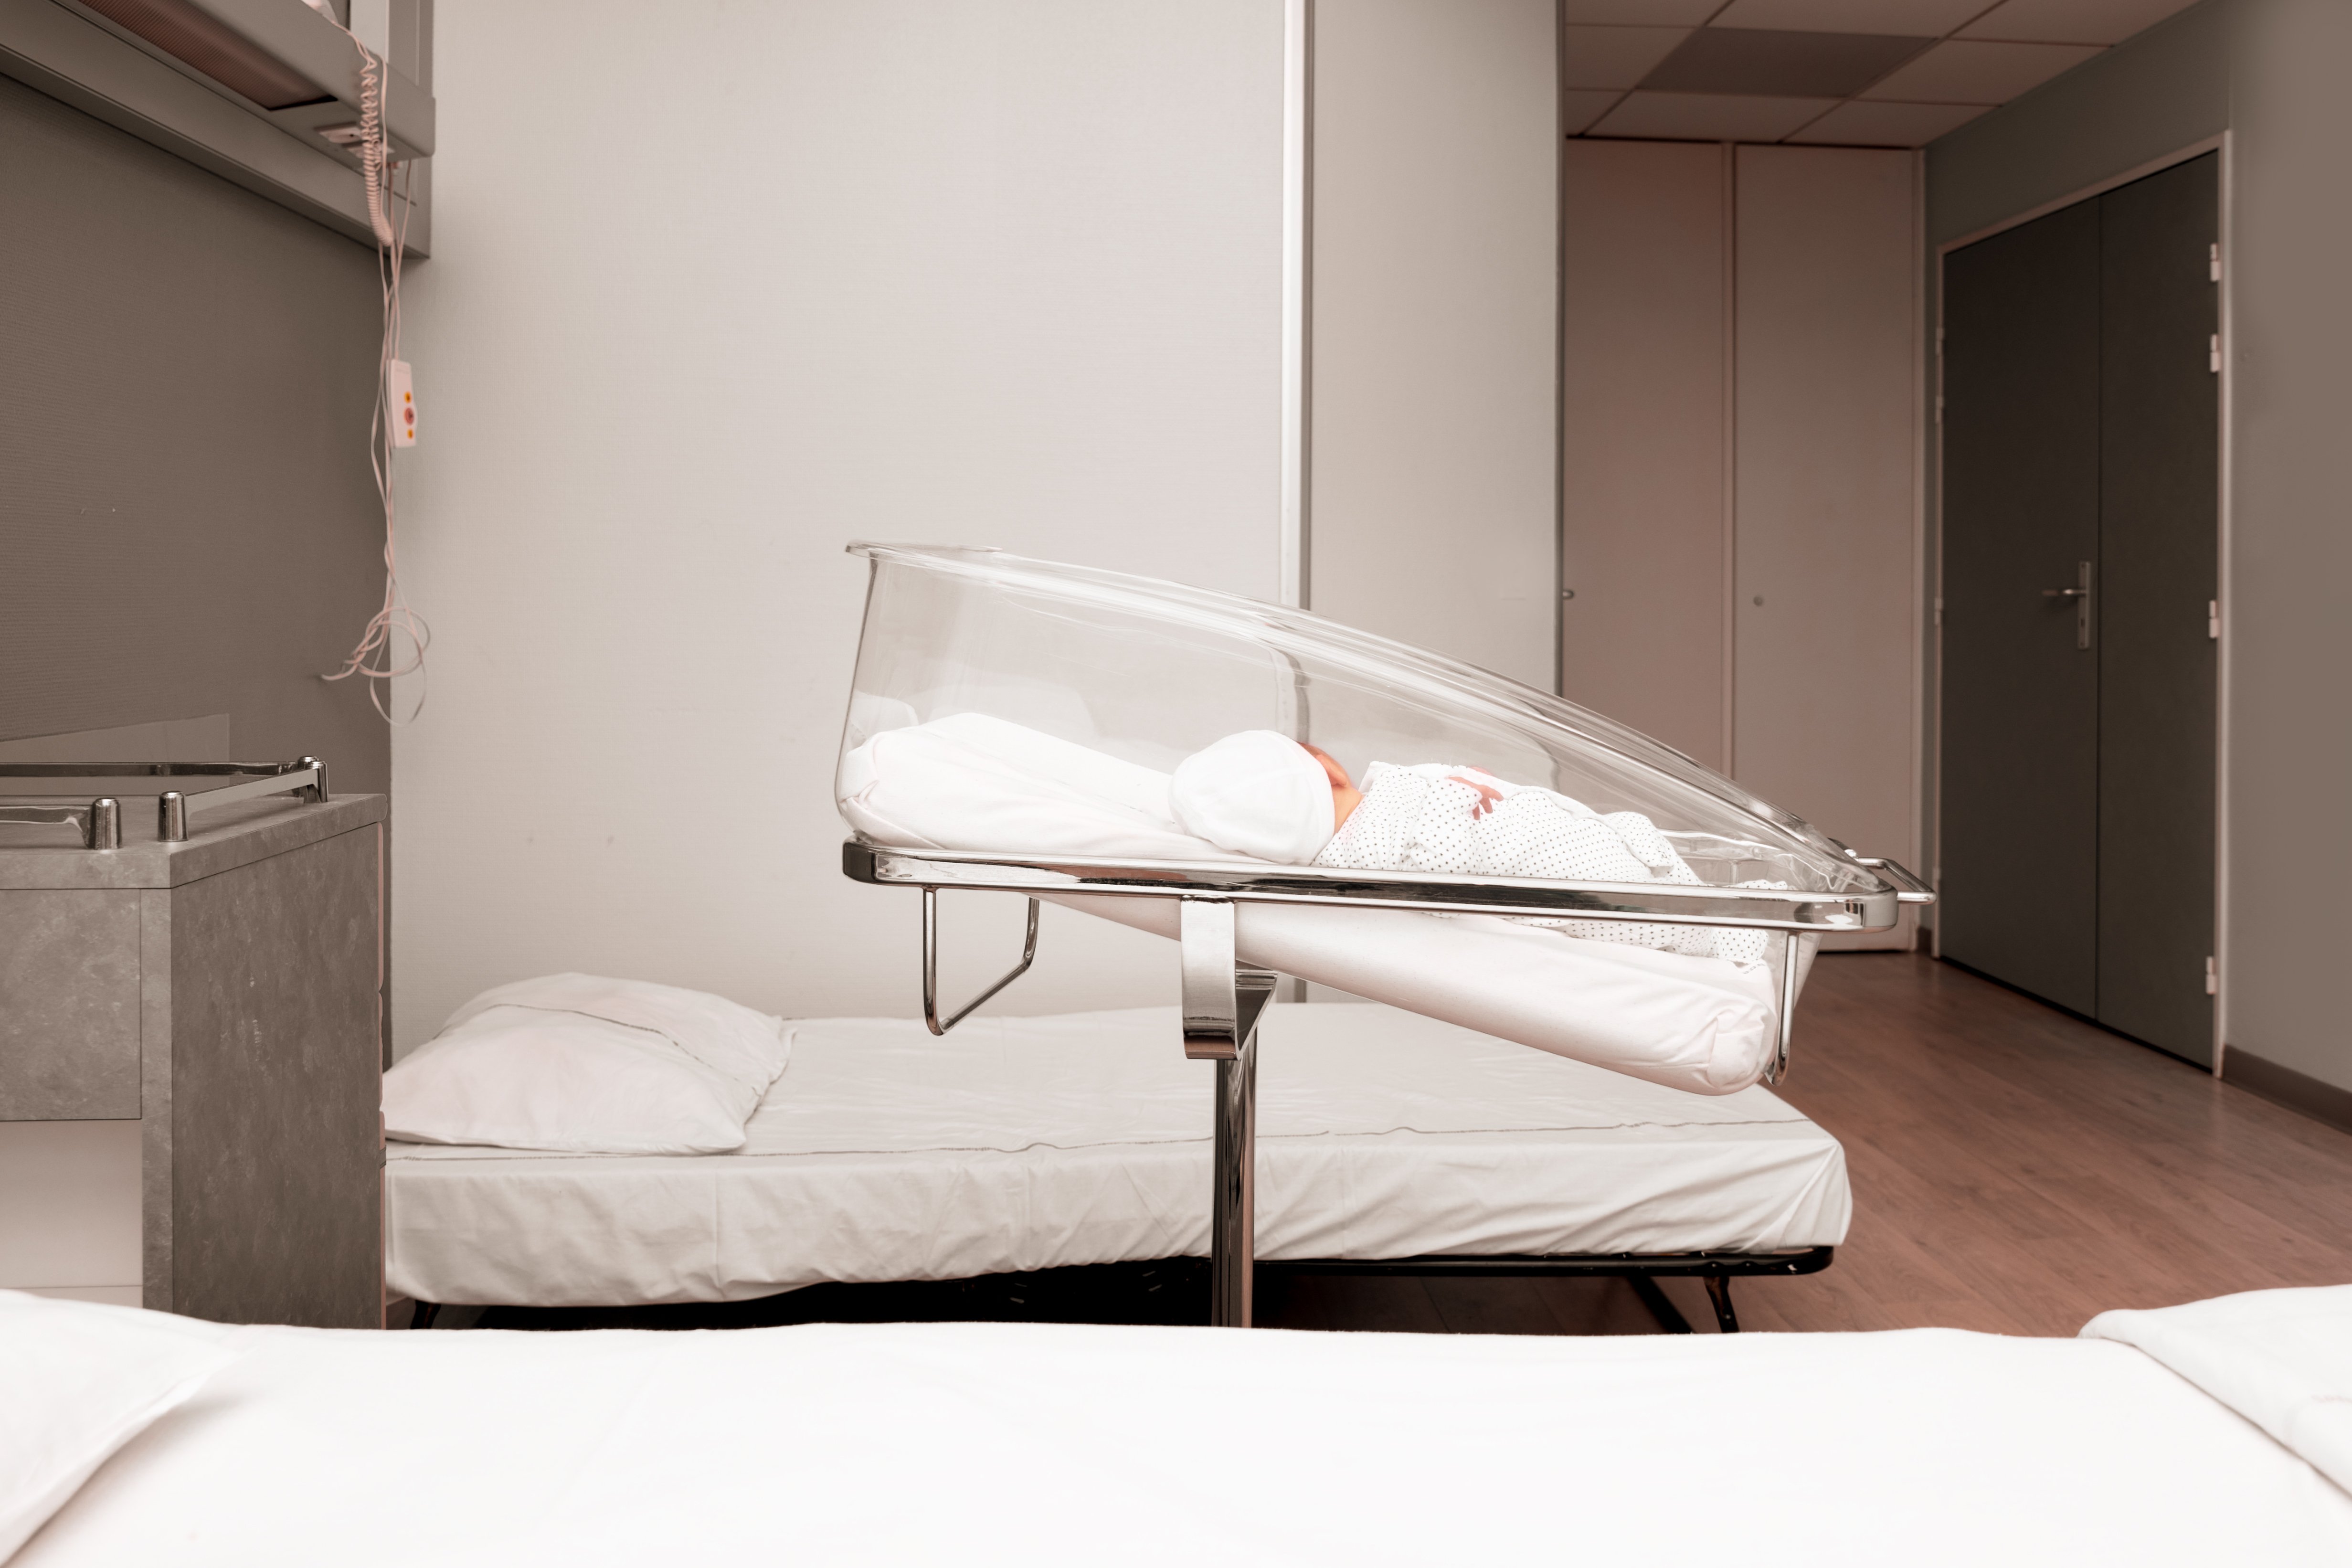 Neugeborenes schläft im Krankenhausbett | Quelle: Shutterstock